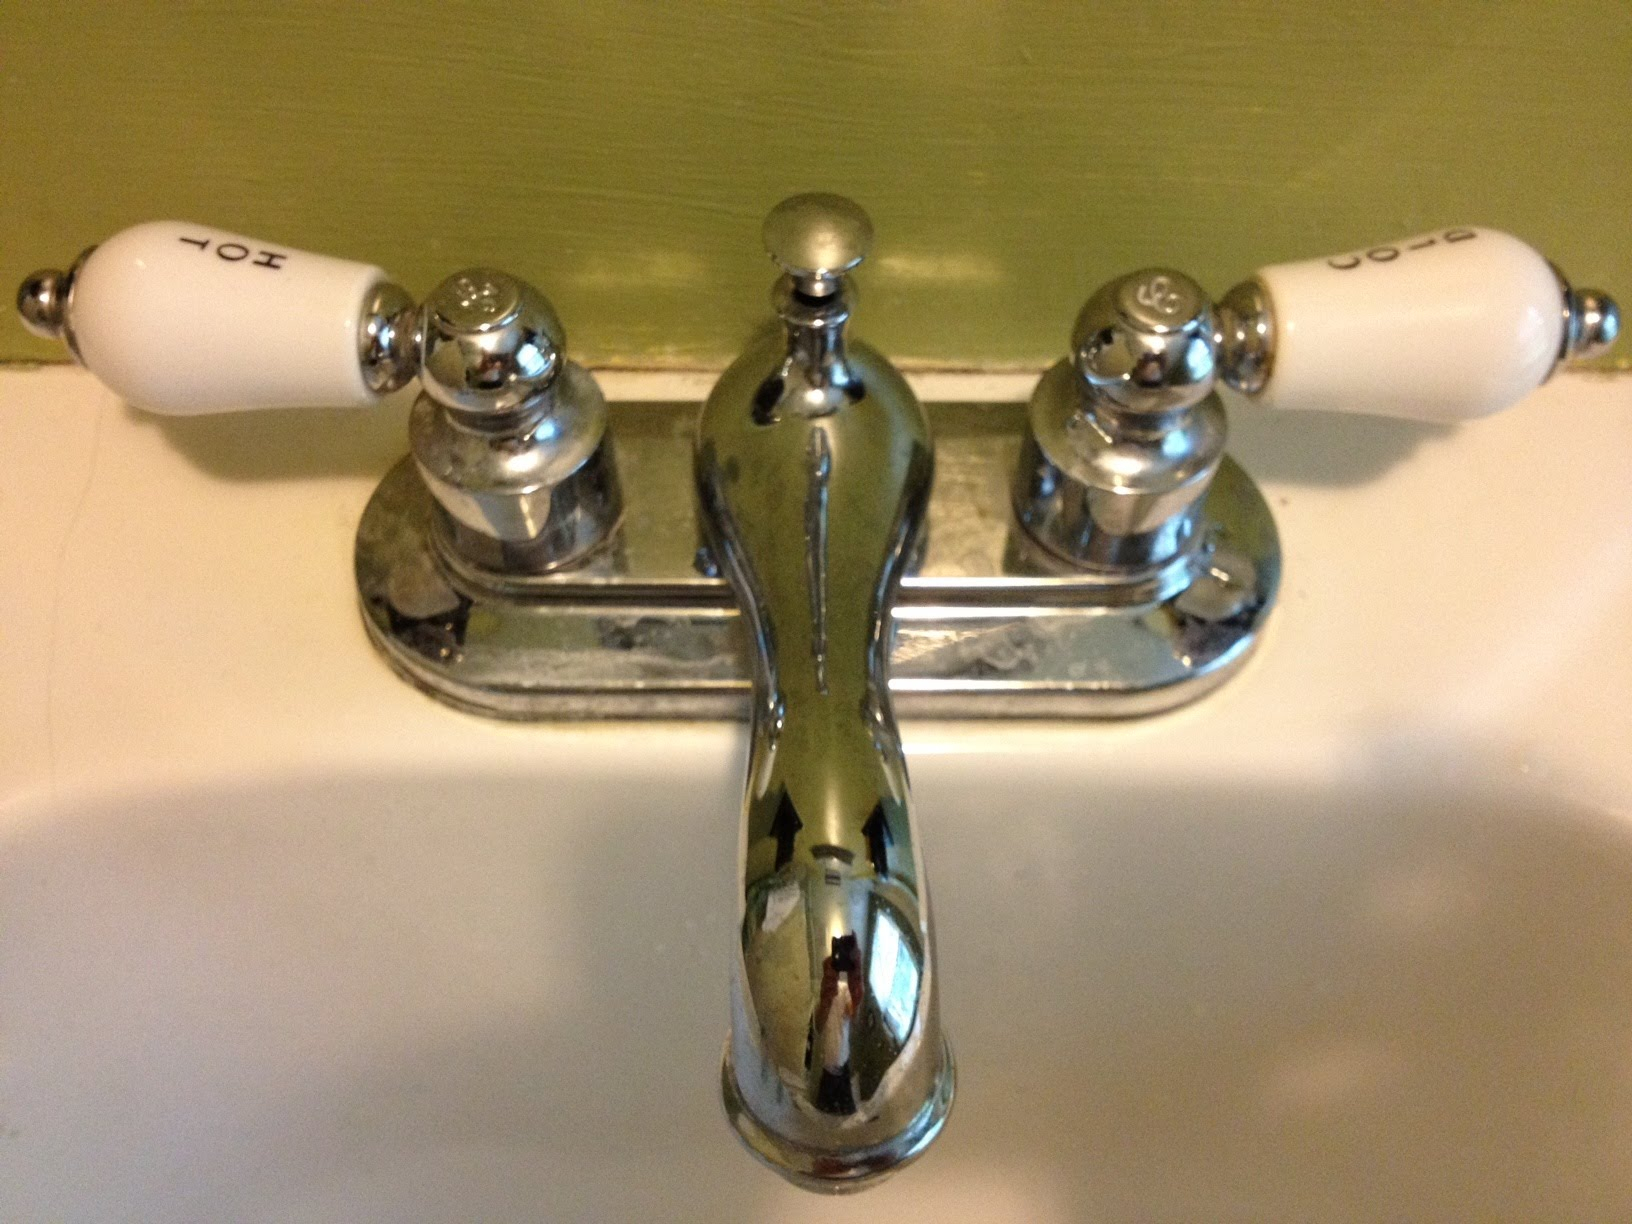 bathroom sink faucet cartridge